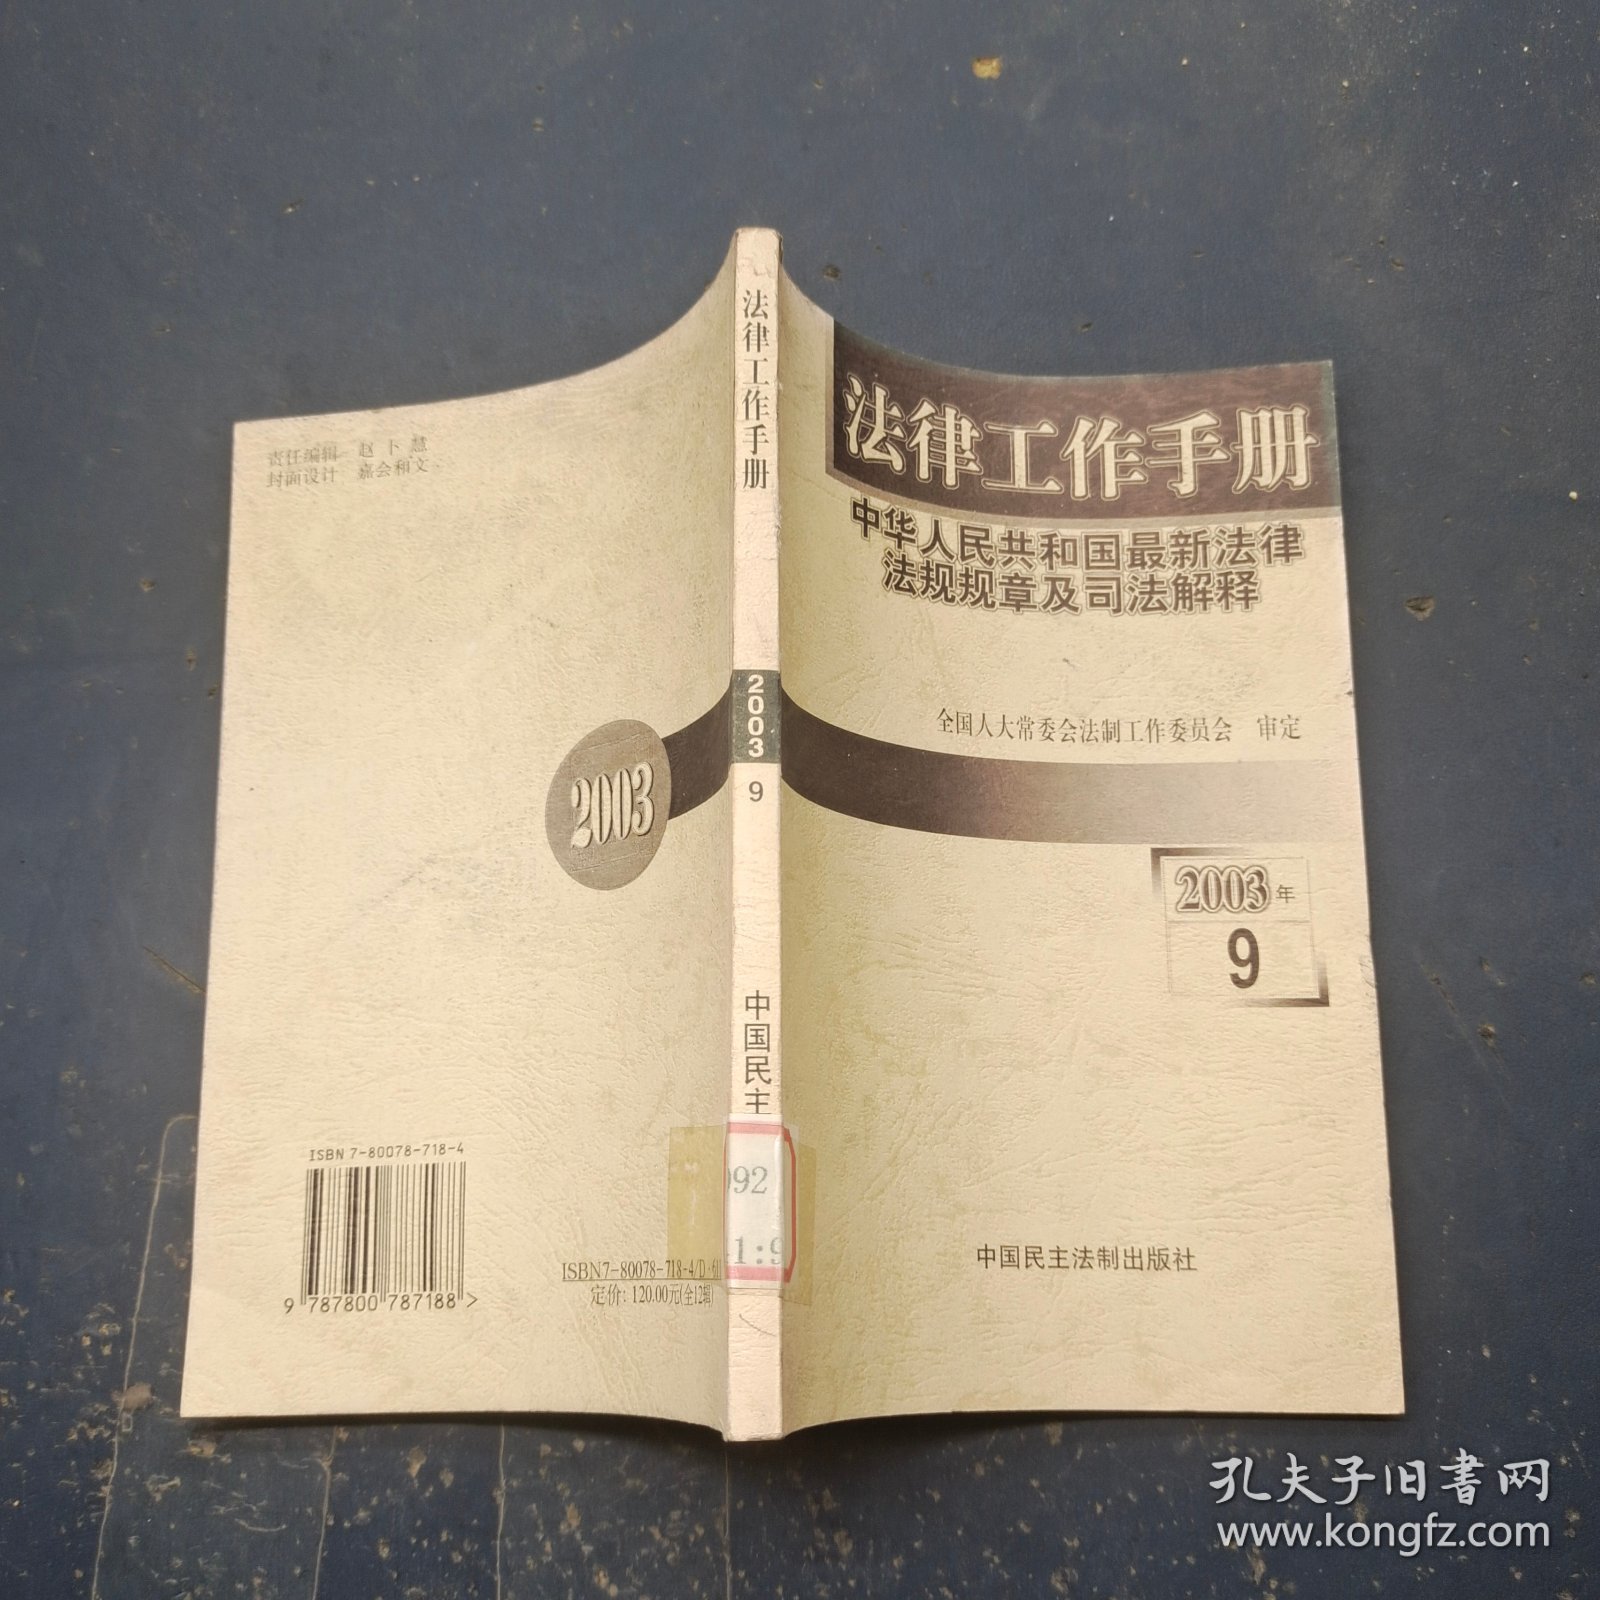 法律工作手册:中华人民共和国最新法律法规规章及司法解释.2003年卷